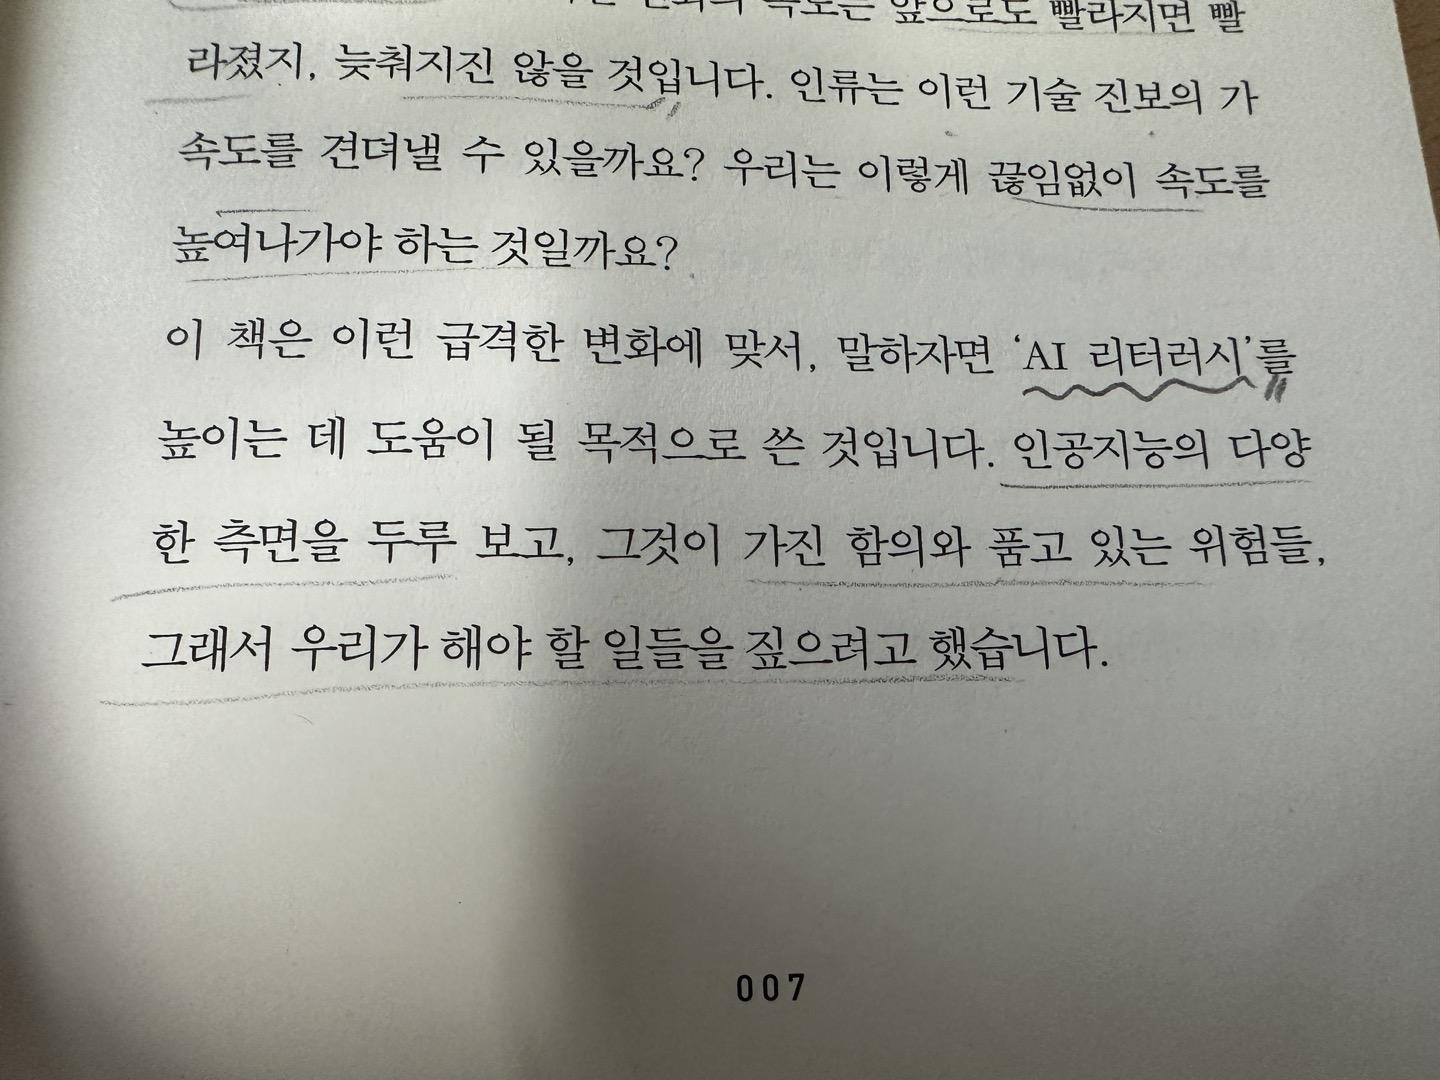 박태웅의 AI강의 책을 쓴 목적